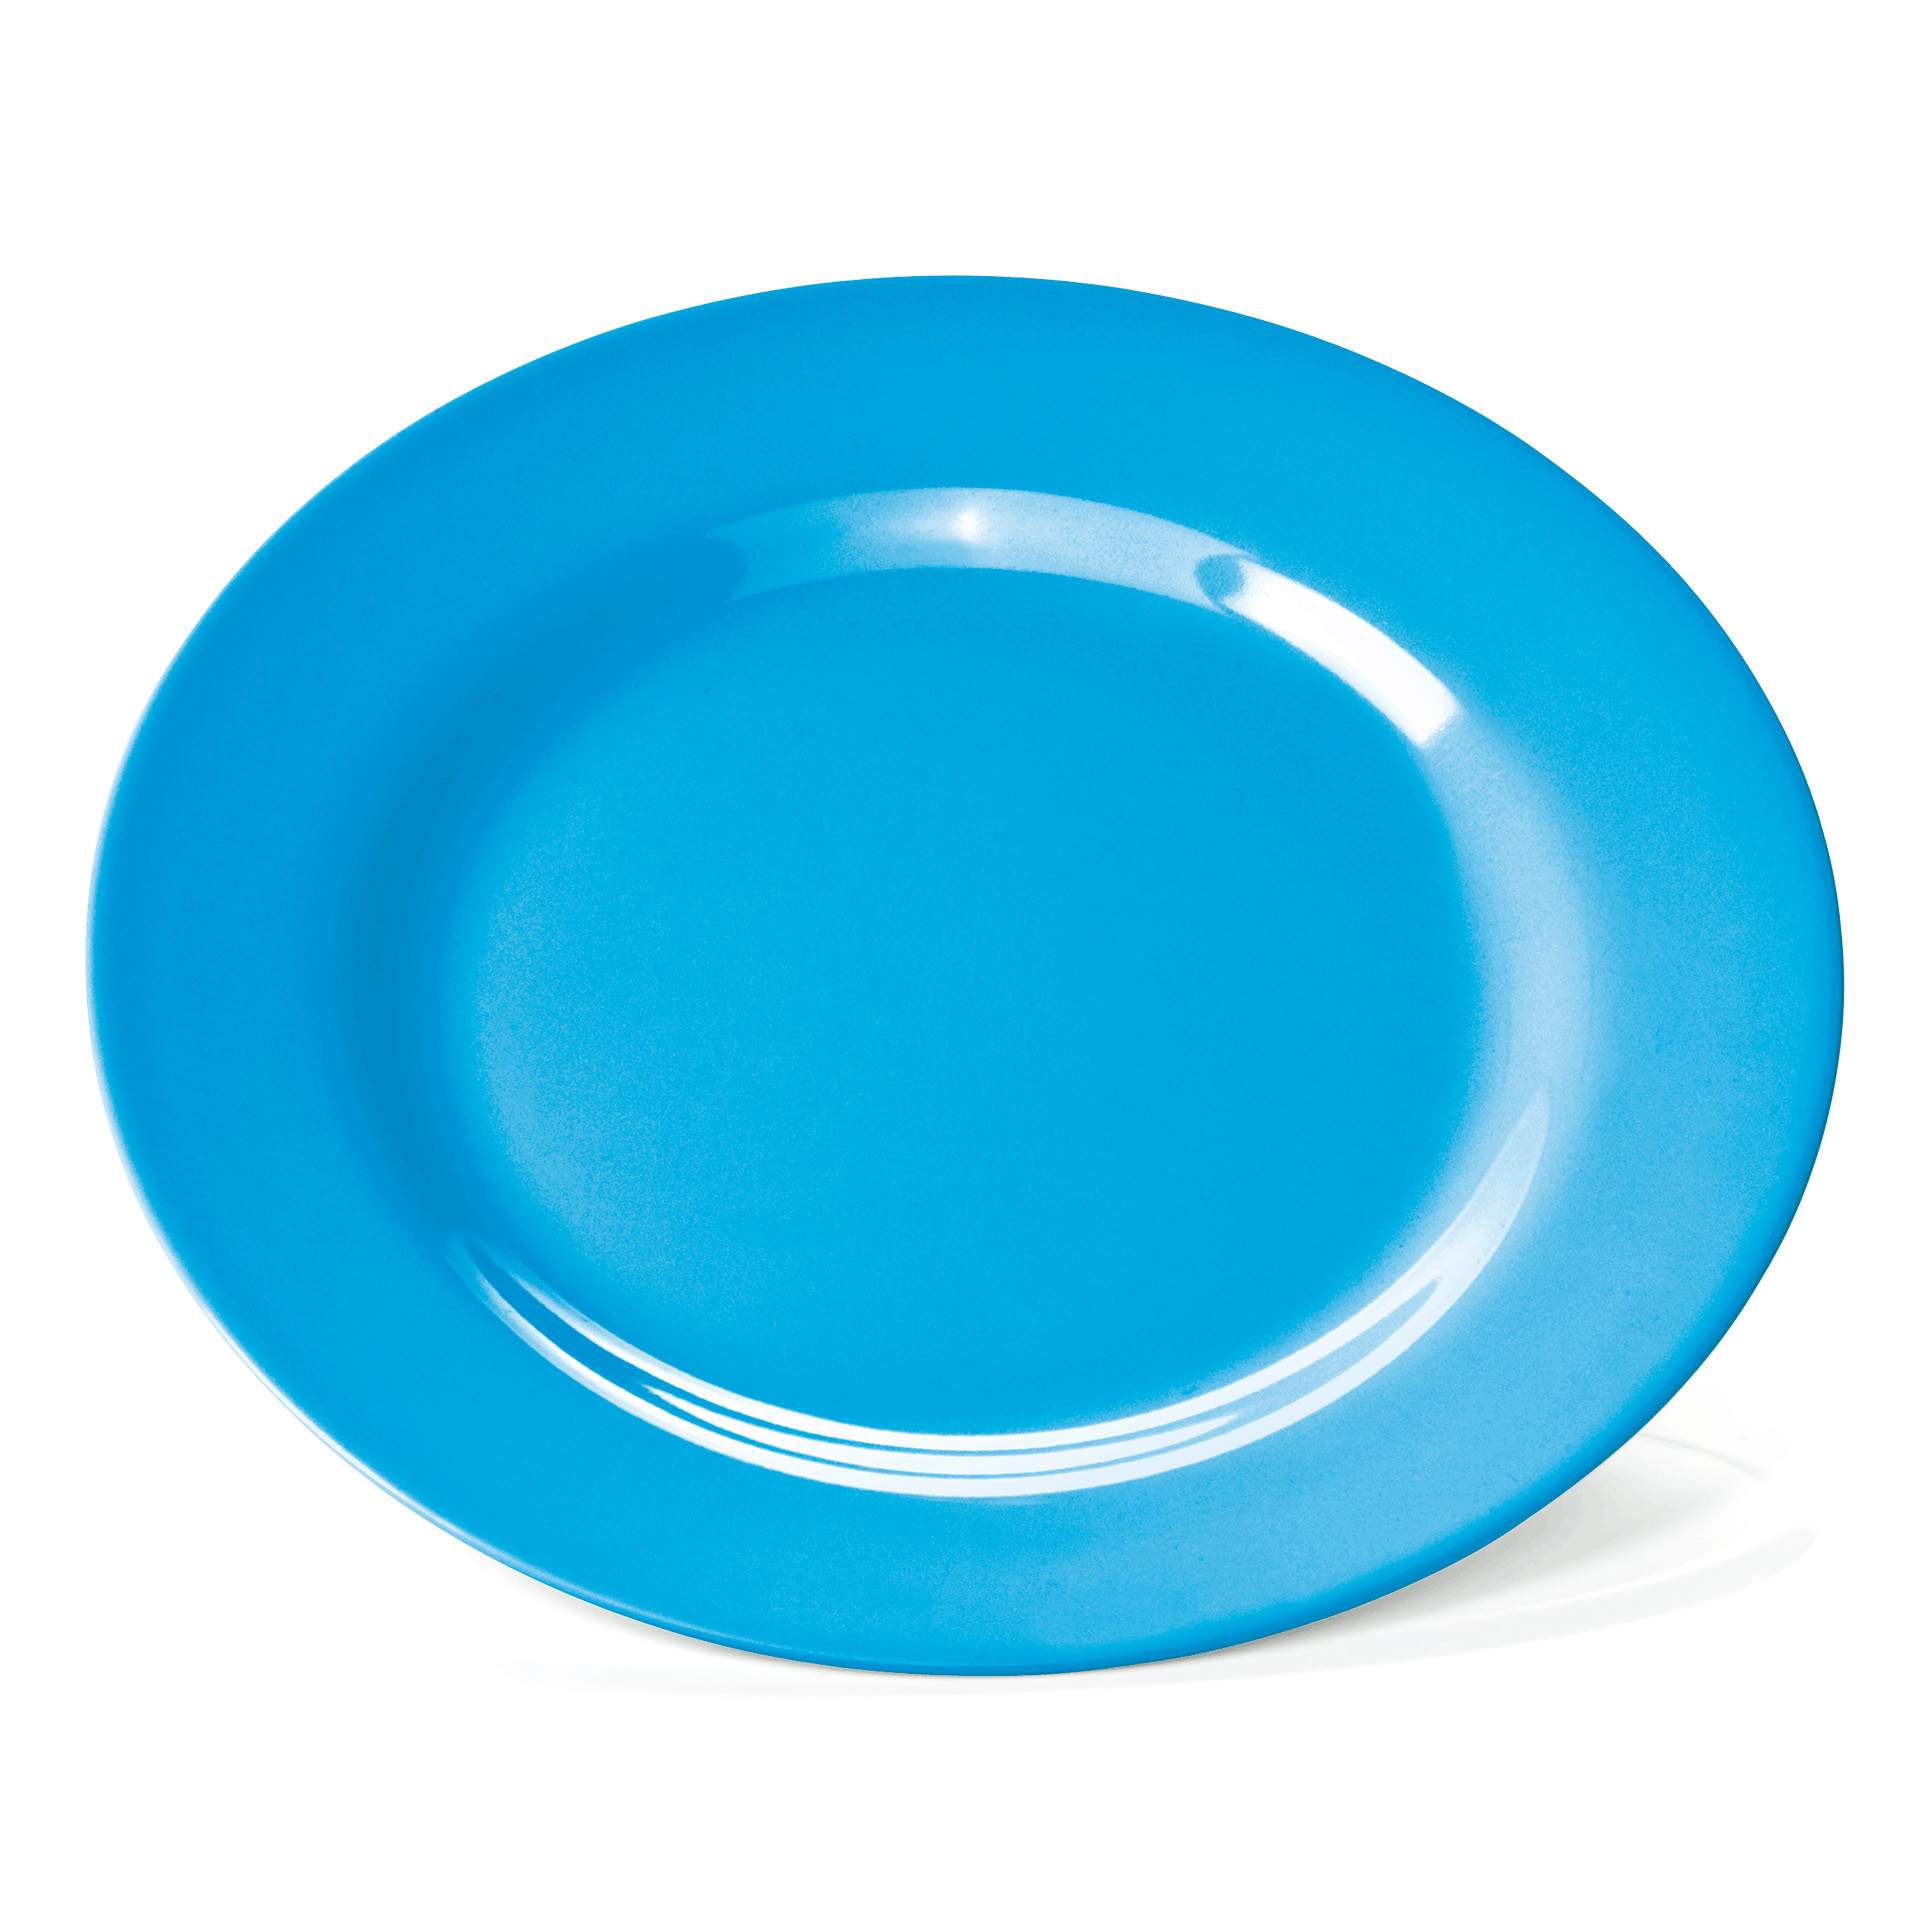 Teller (flach) - flach - blau - Ø 23,0 cm - Melamin - 9360232-A